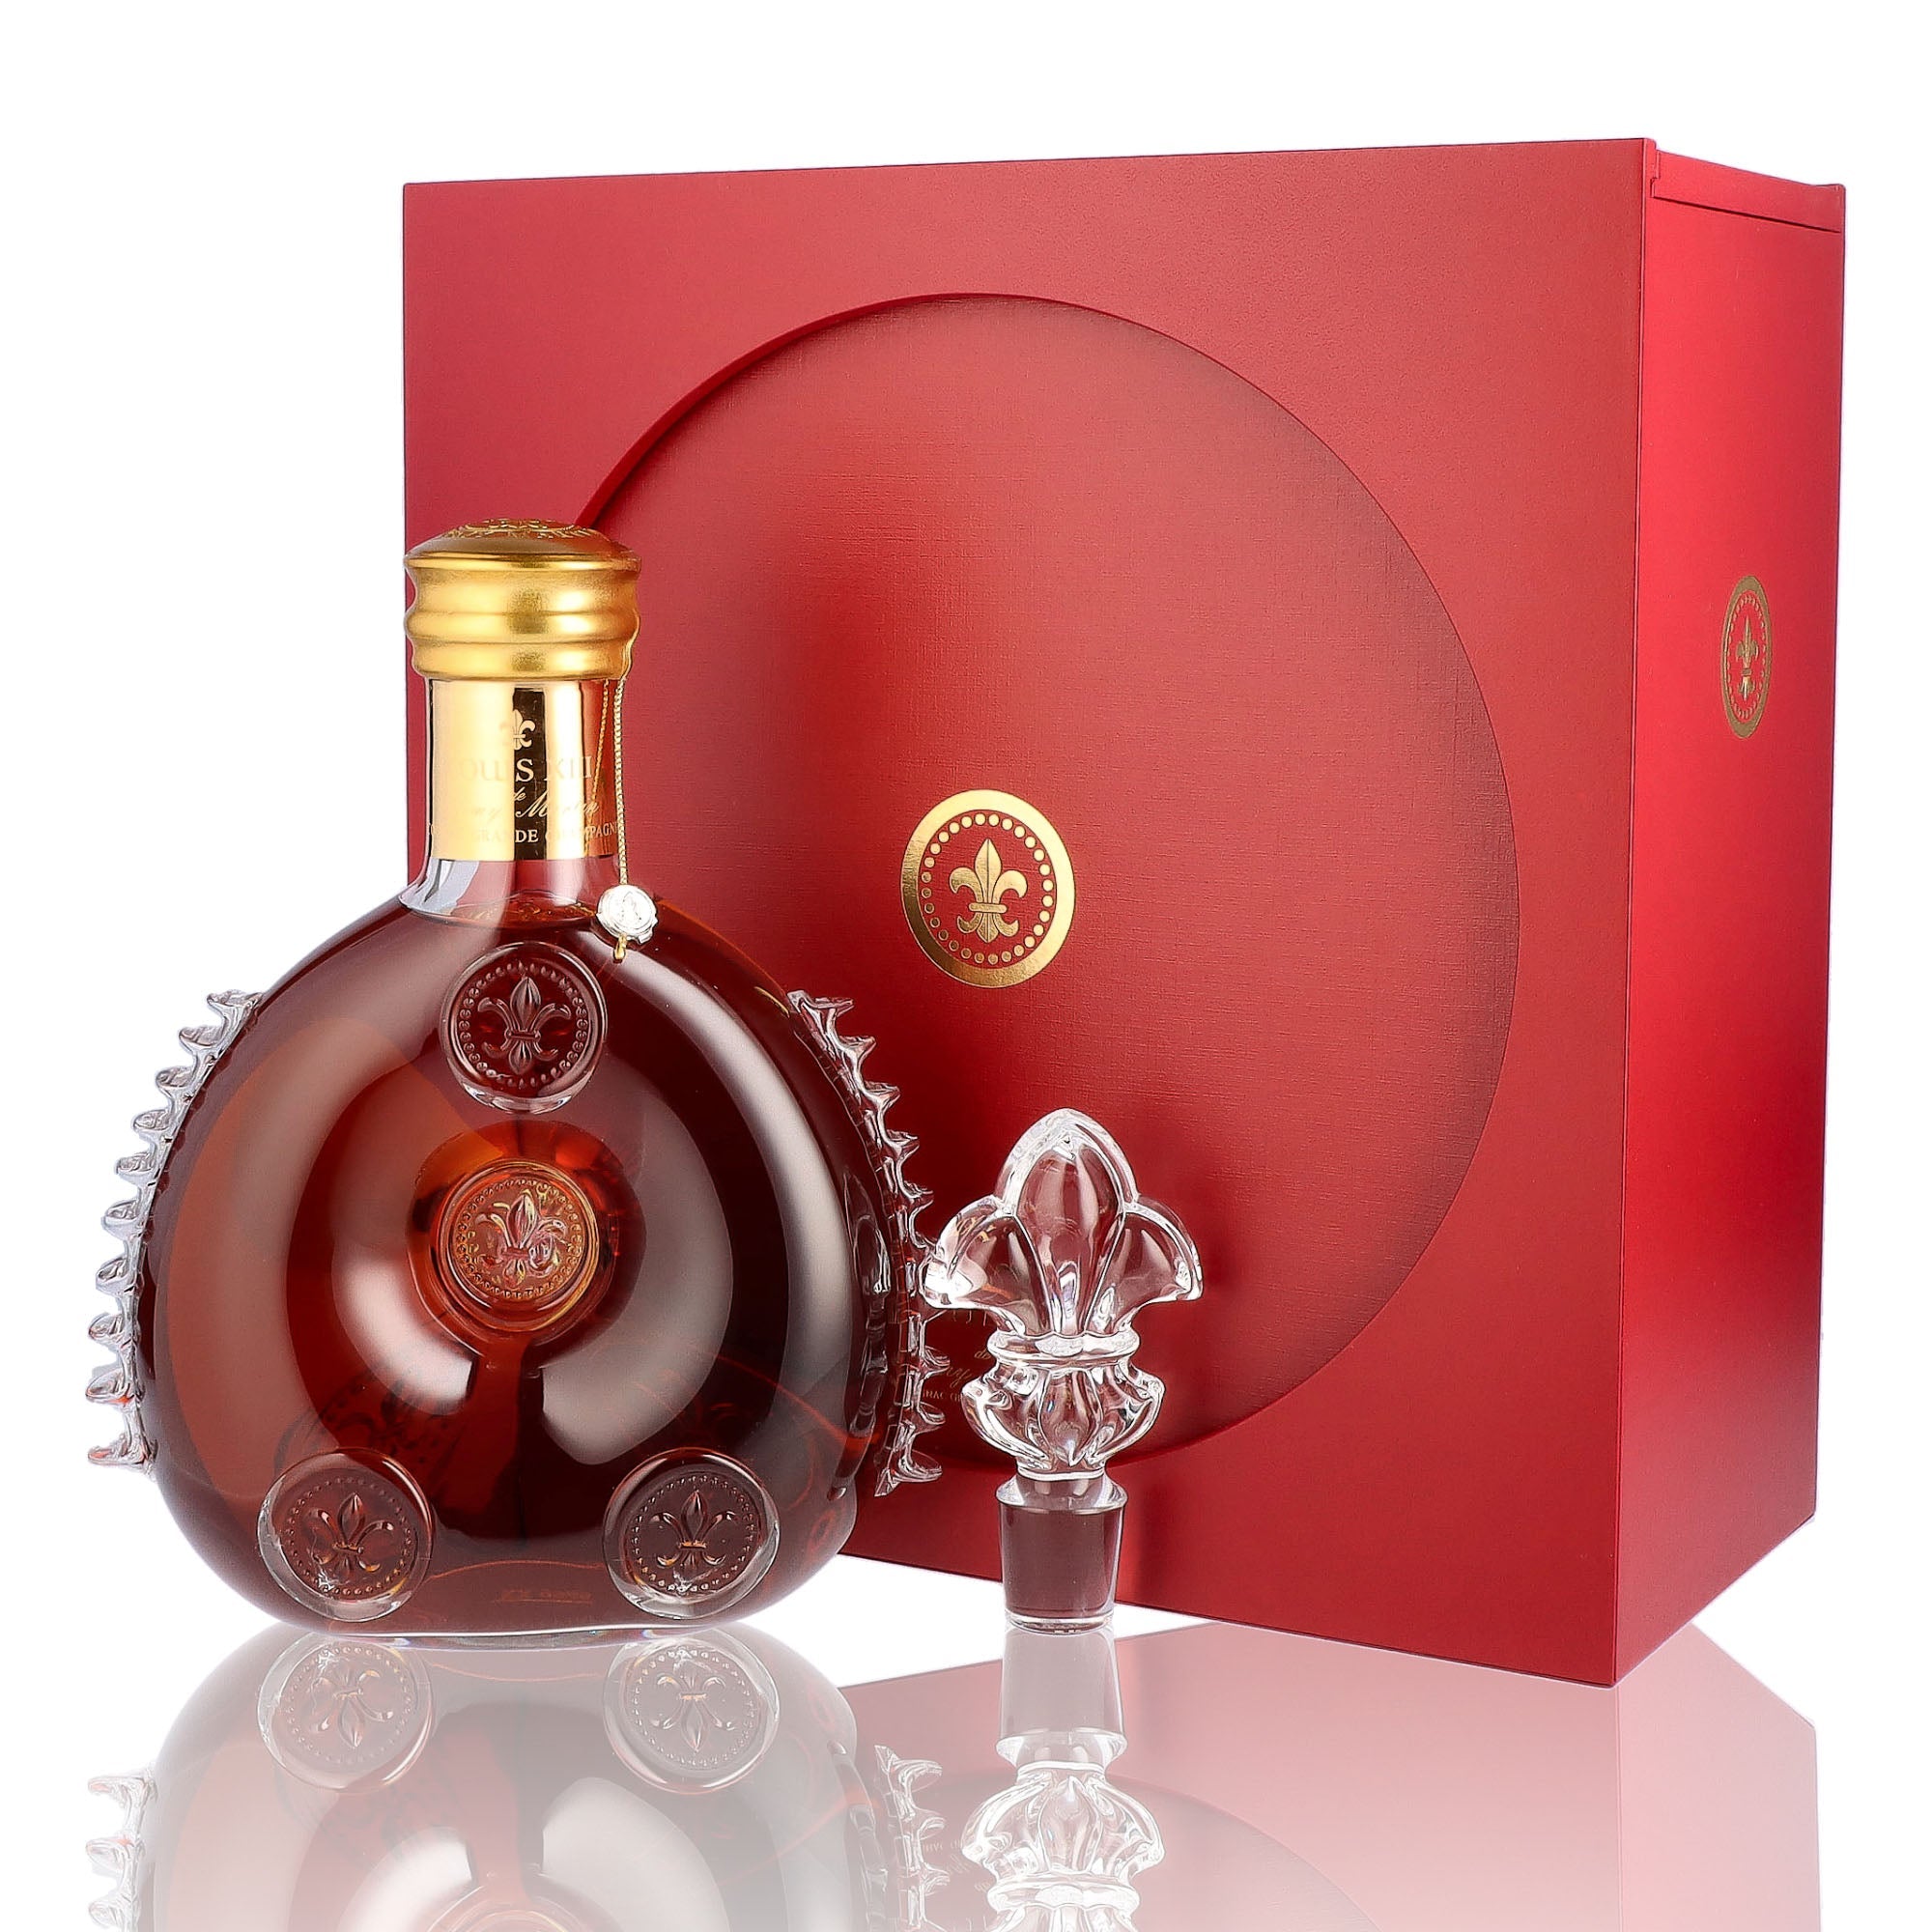 Une bouteille de Cognac, de la marque Remy Martin, nommée Louis XIII.